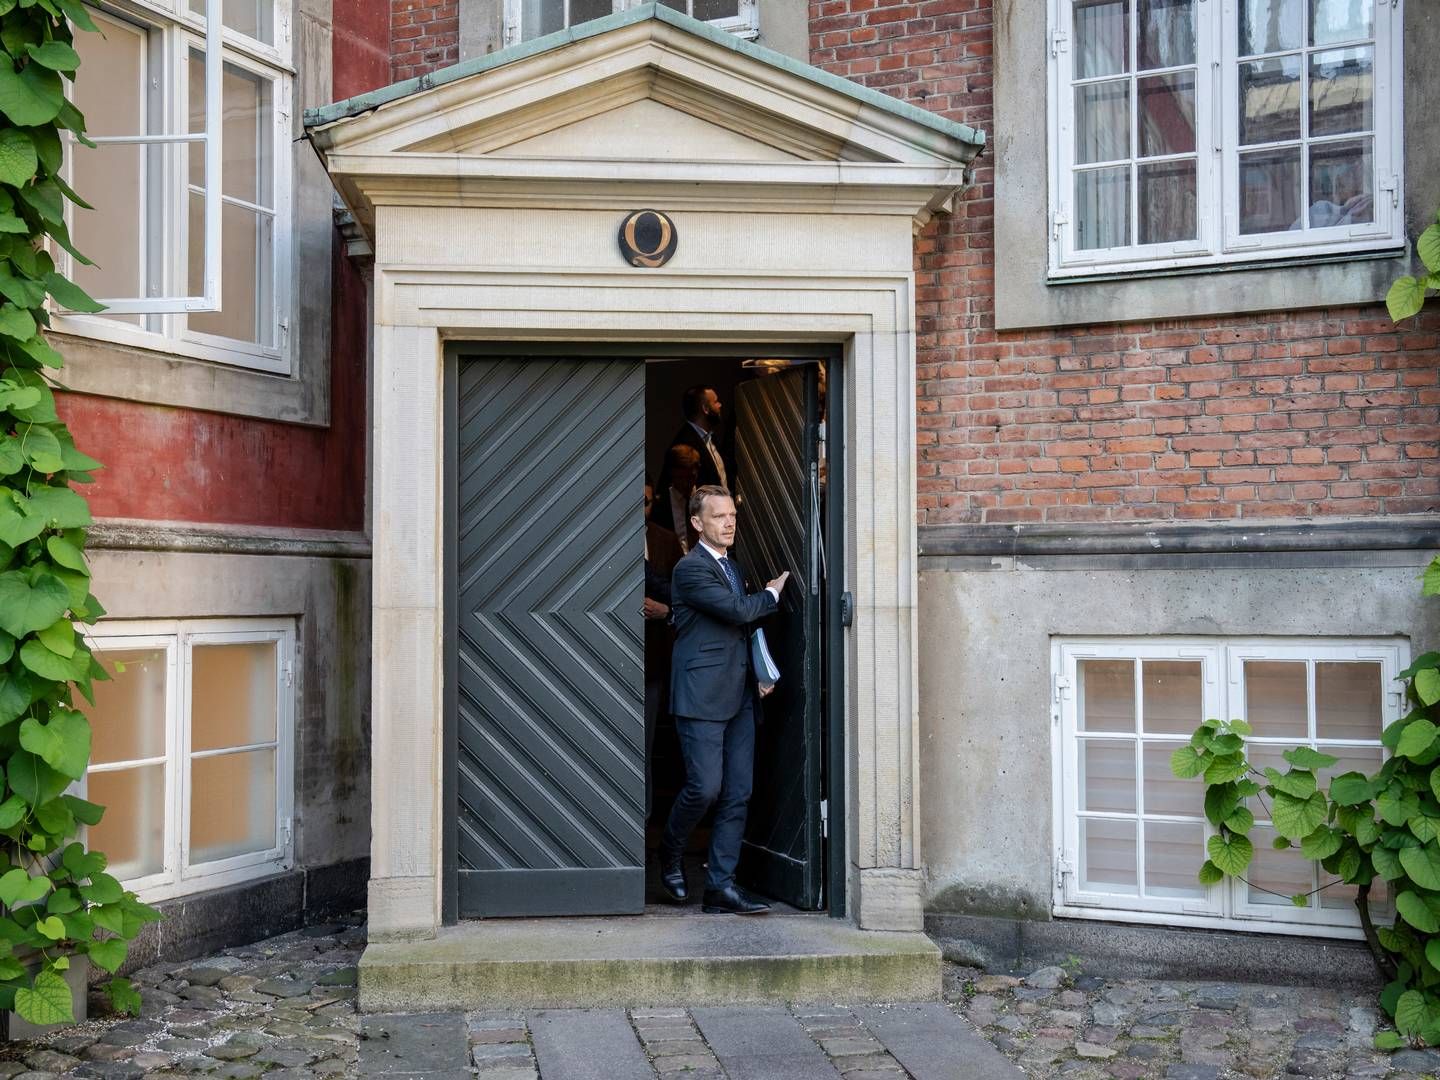 Justitsminister Peter Hummelgaard (S) er klar til at åbne døren, så arbejdet med at gennemgå ordningerne for retshjælp og fri proces kan genoptages. | Foto: Mads Claus Rasmussen